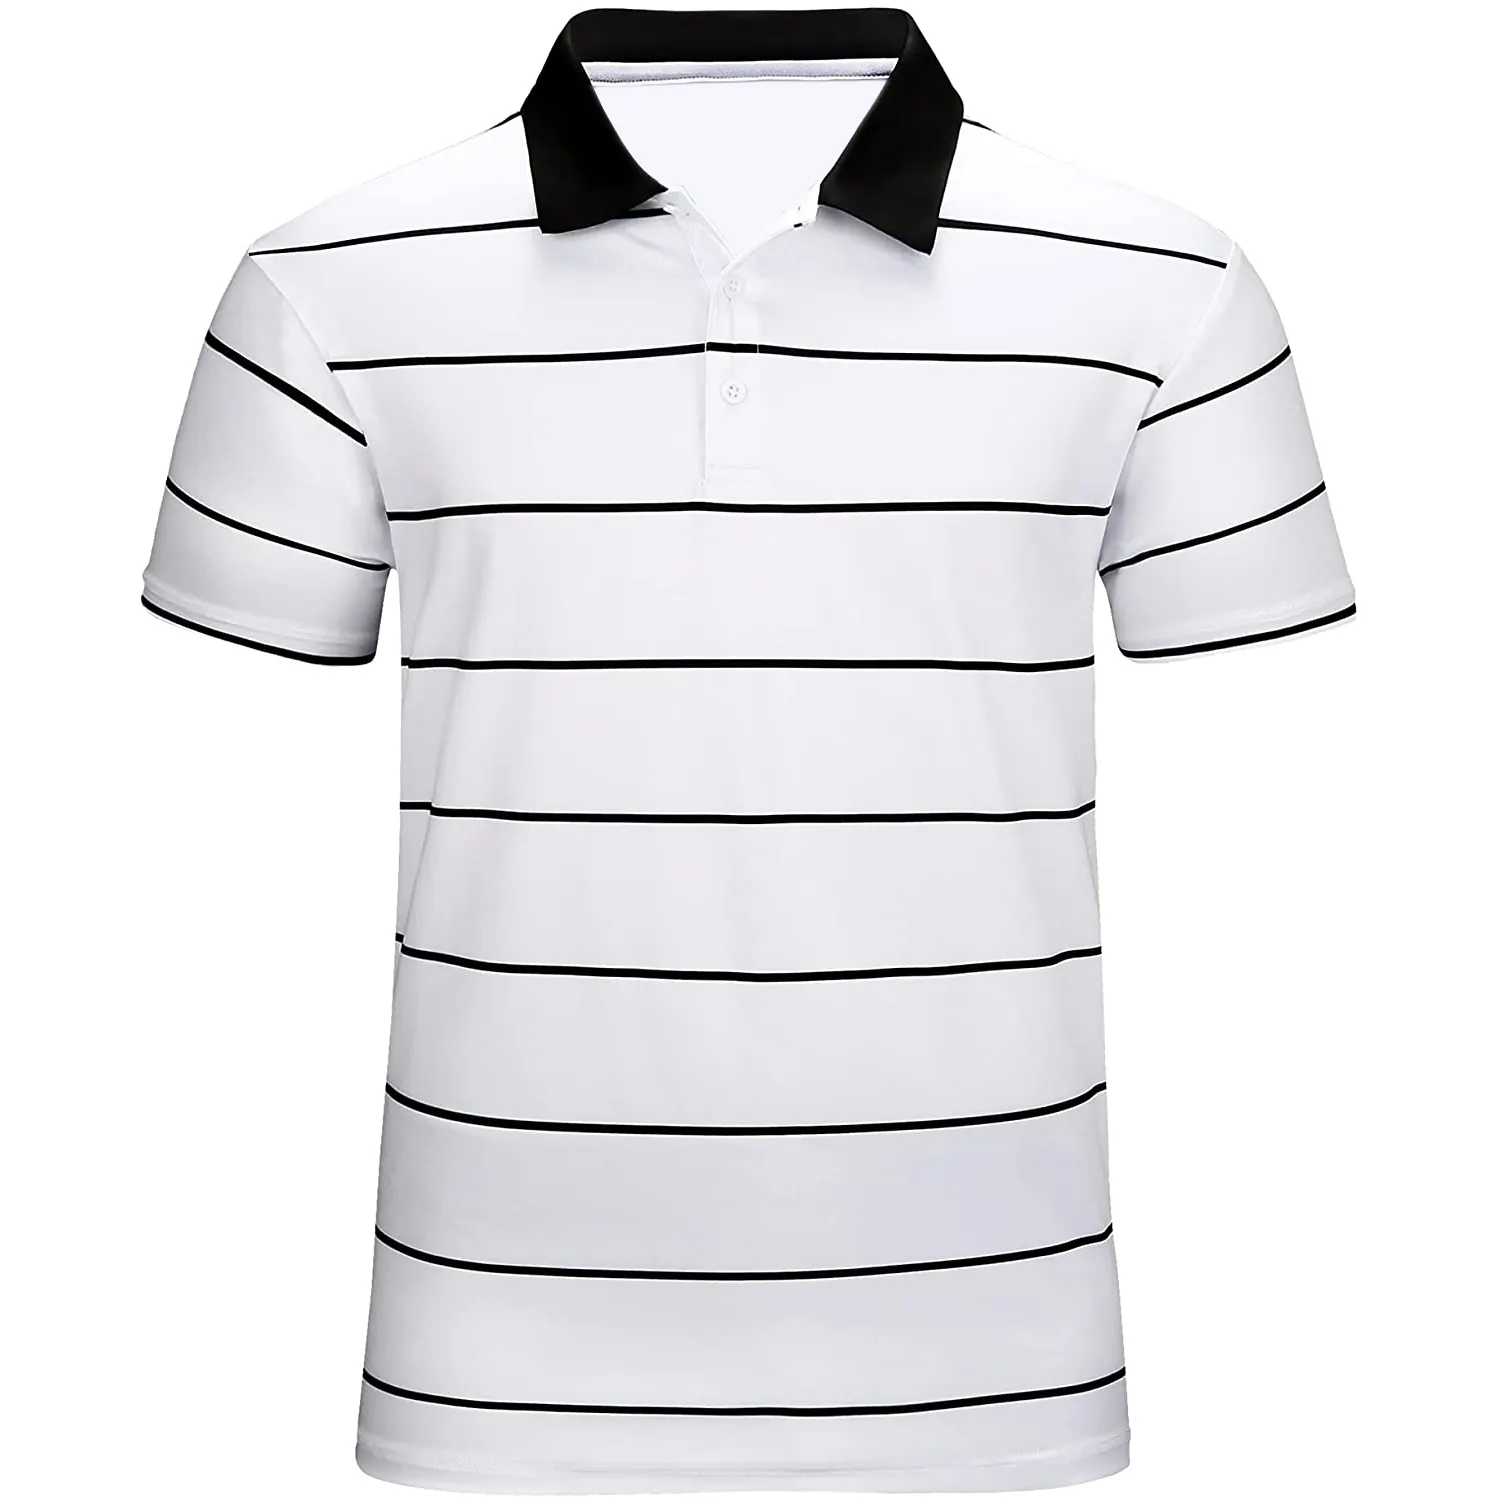 メンズポロシャツ新しいデザインカジュアルプレーンゴルフメンズポロTシャツ綿100% 刺繍カスタマイズロゴカラーポロシャツ